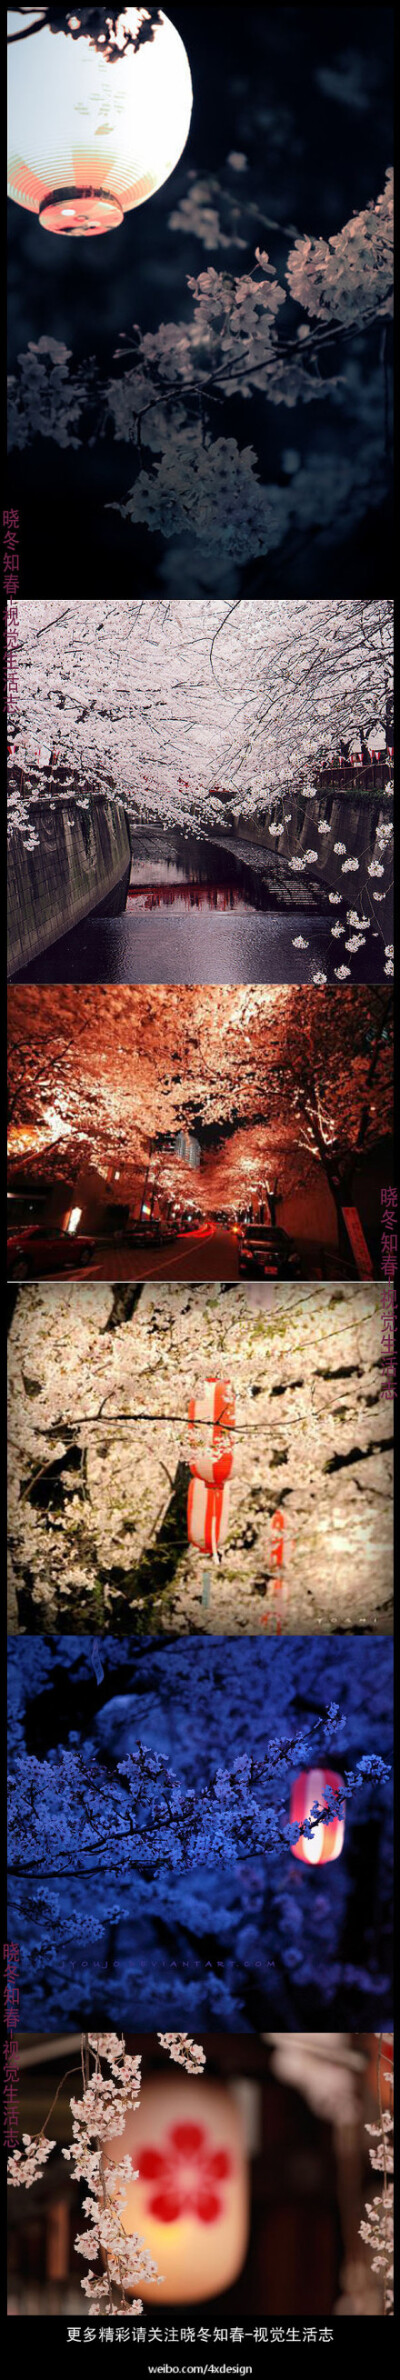 樱花倾城------越夜越美丽。更多精彩请关注@晓冬知春